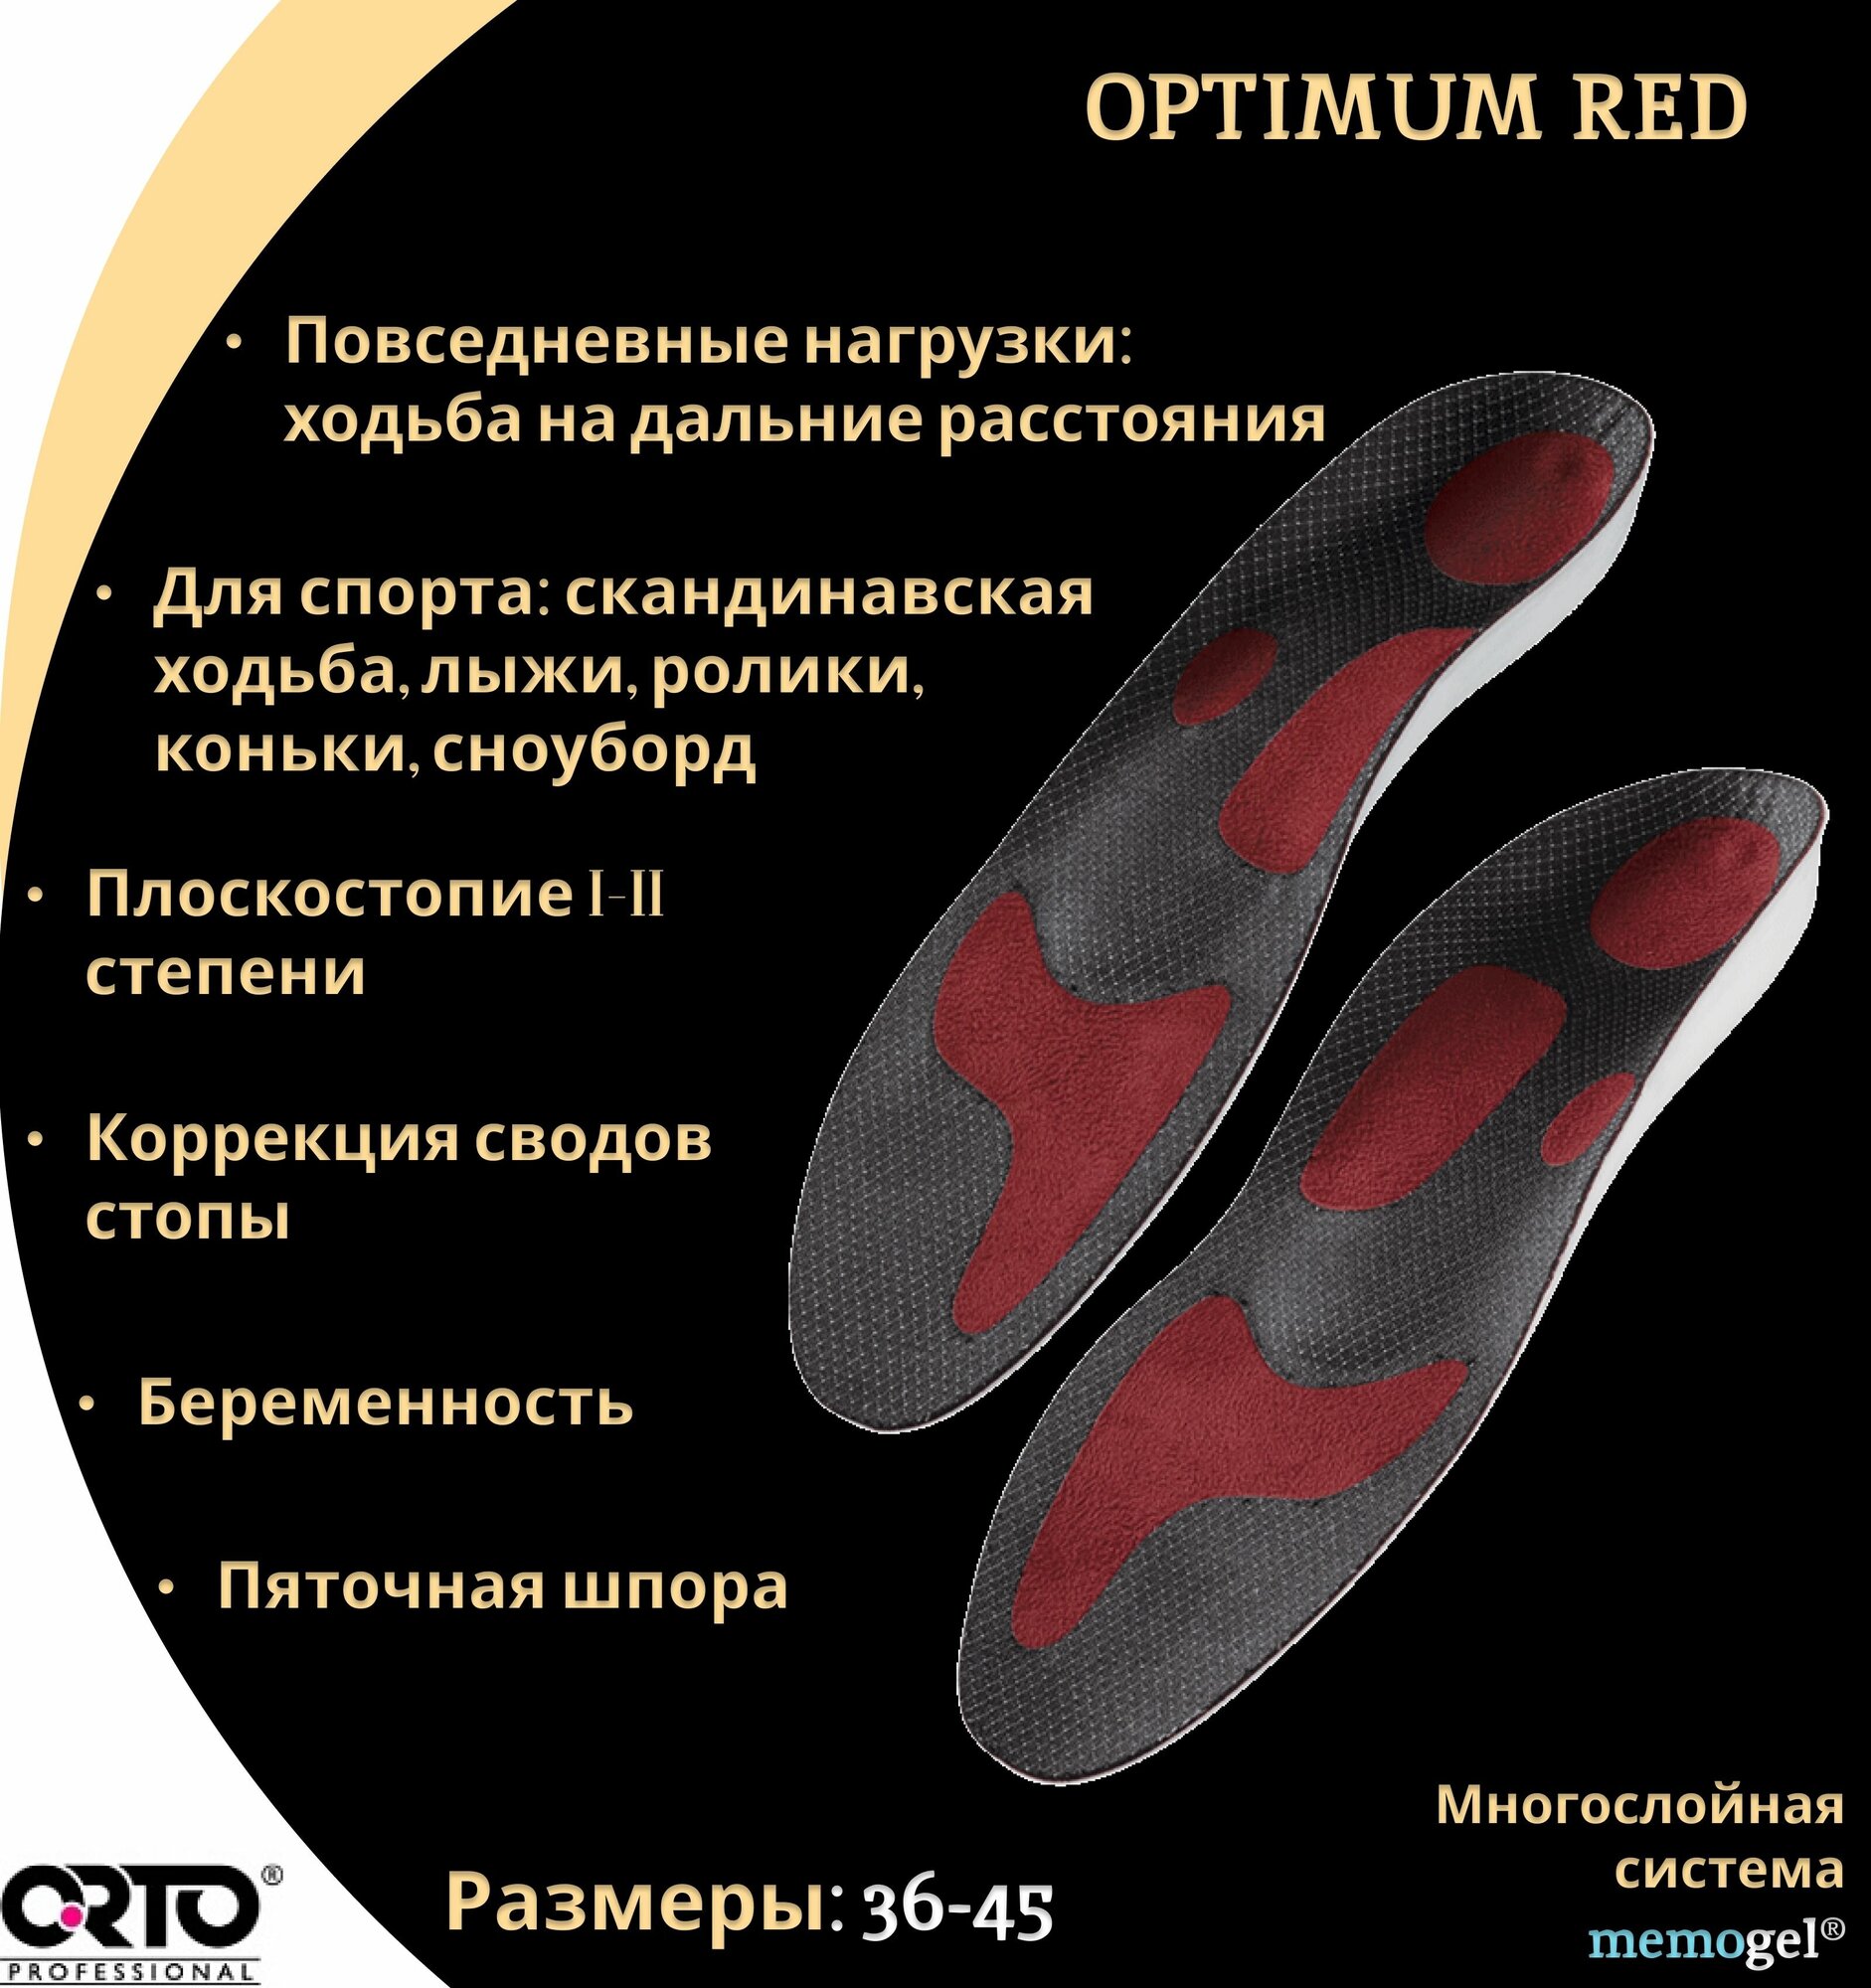 Cтельки ортопедические мужские женские каркасные с эффектом памяти Orto Professional Optimum Red, при пяточной шпоре, размер 45